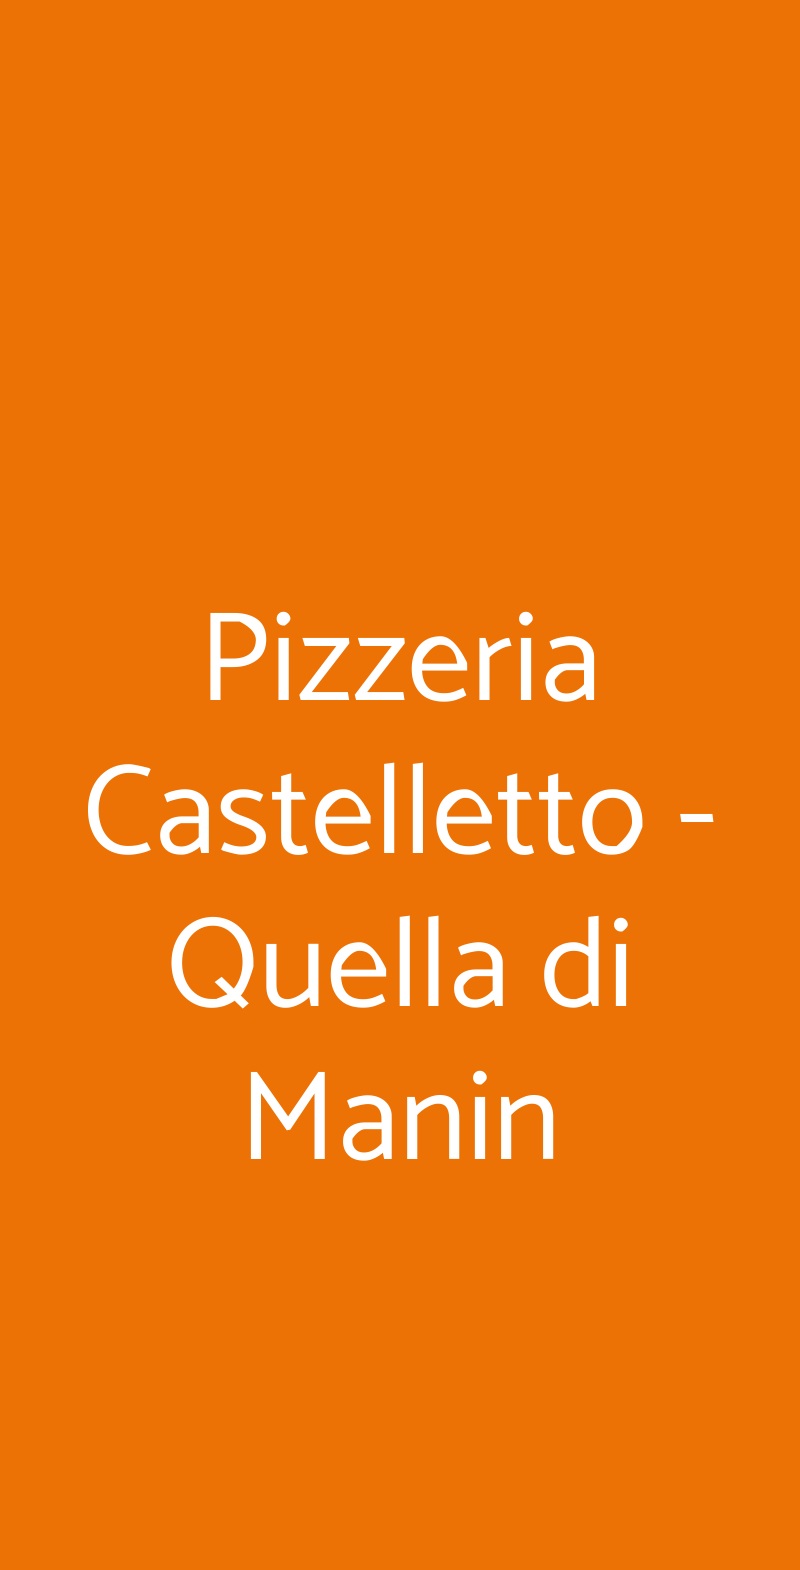 Pizzeria Castelletto - Quella di Manin Genova menù 1 pagina